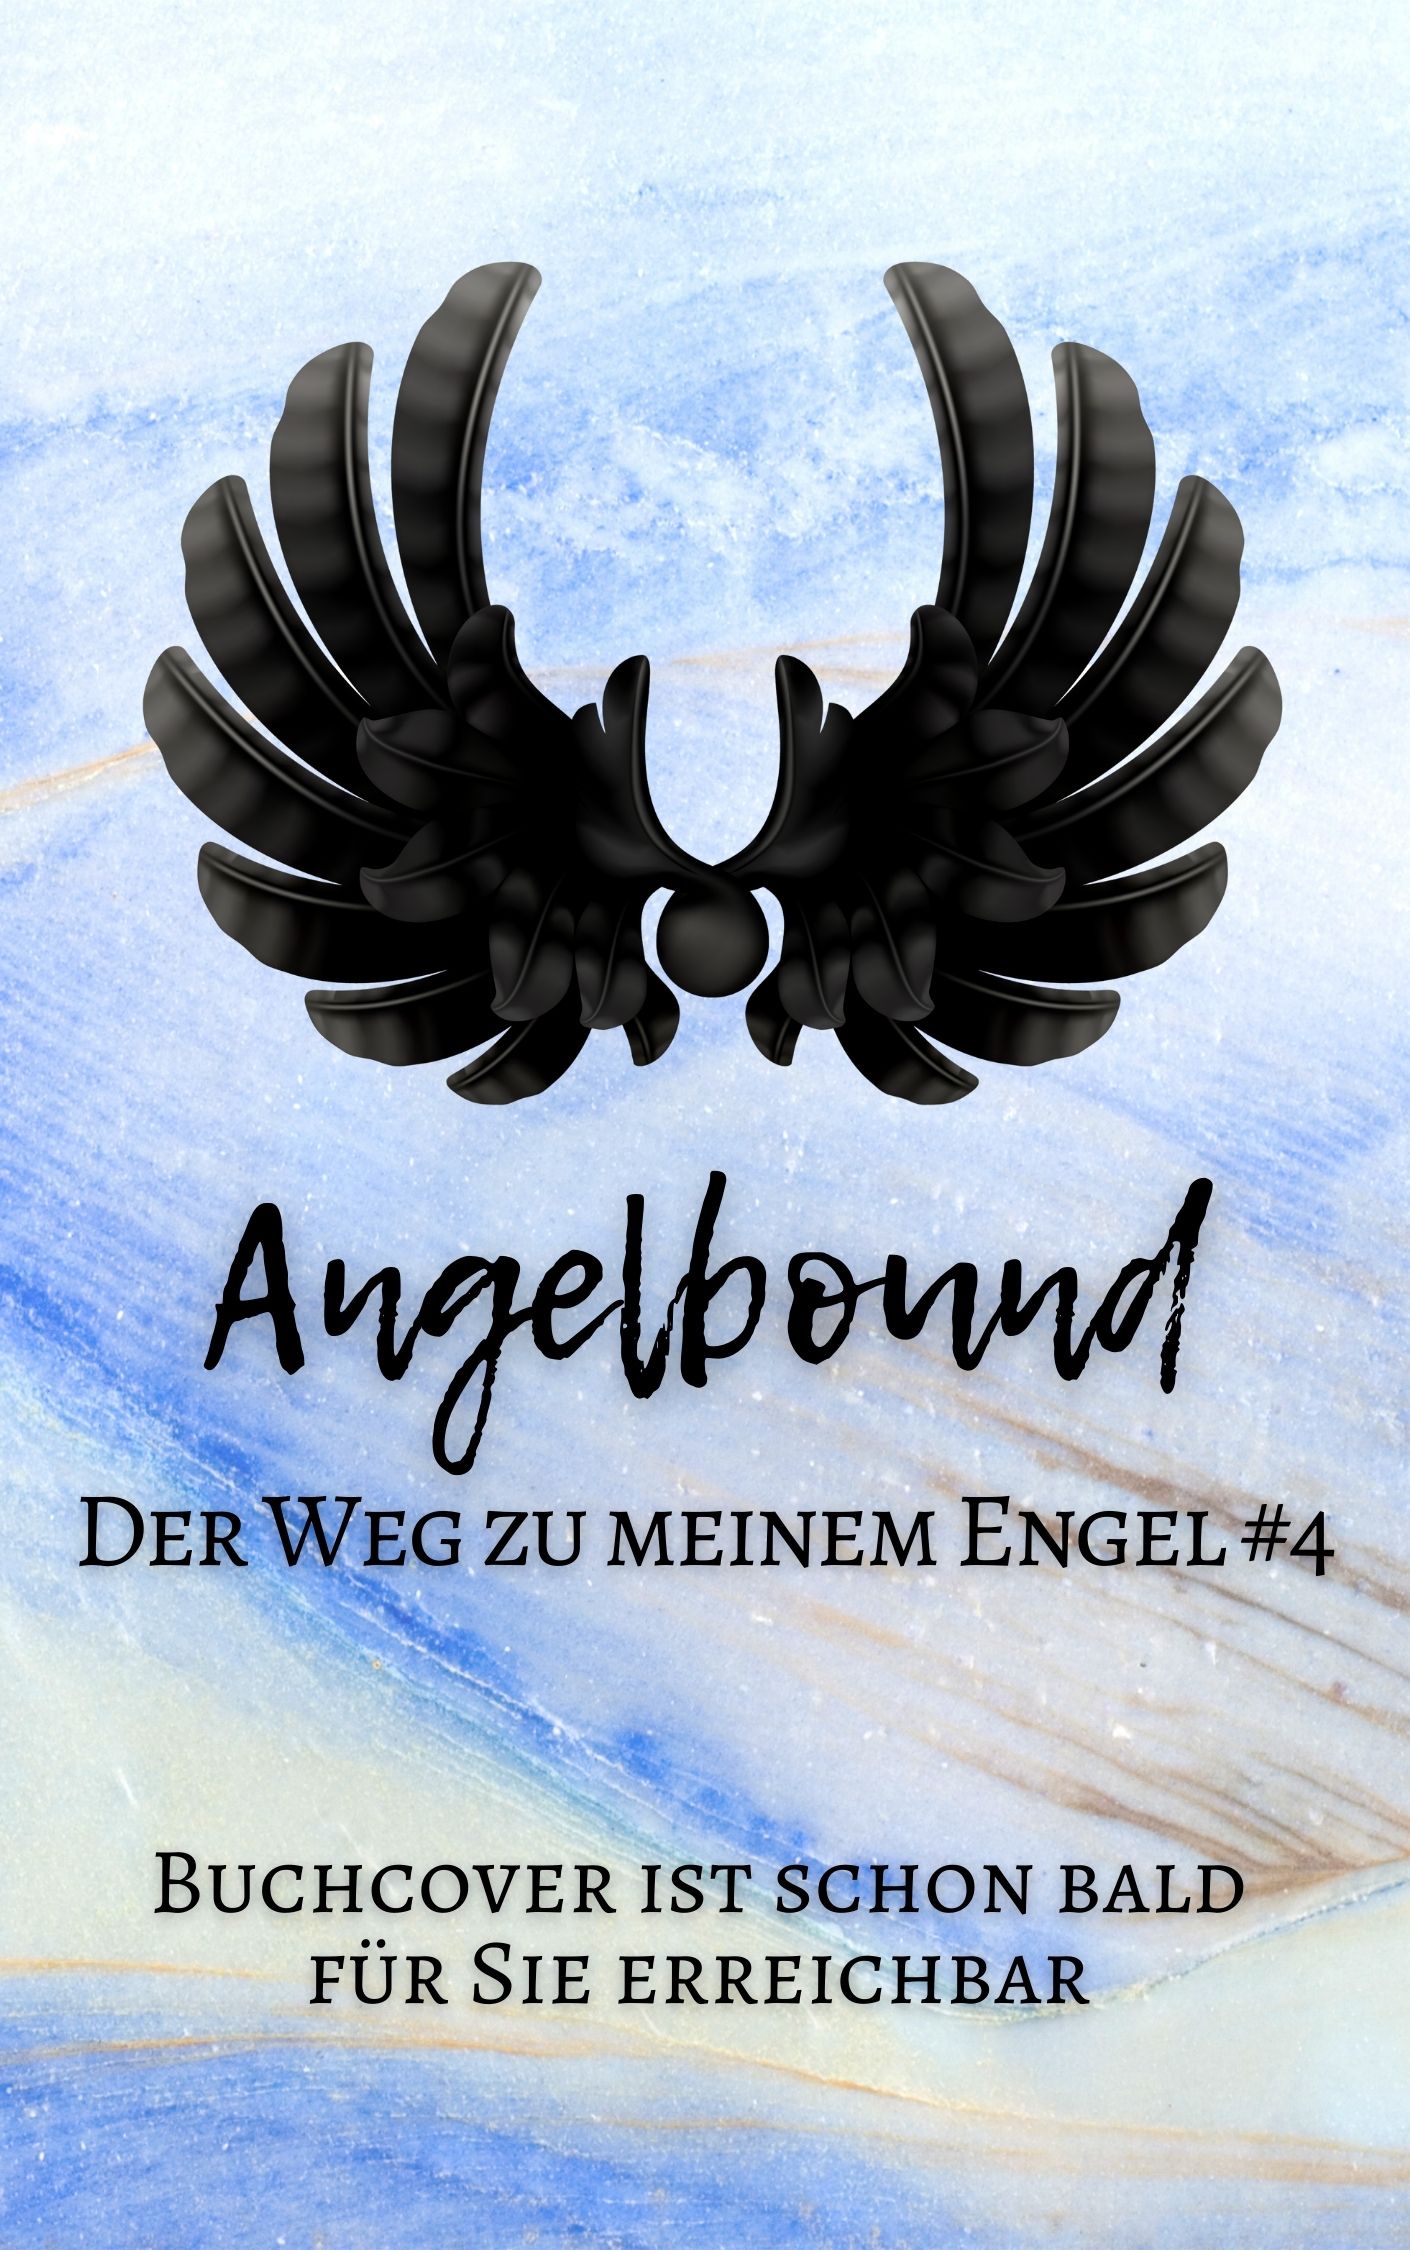 4 Angelbound